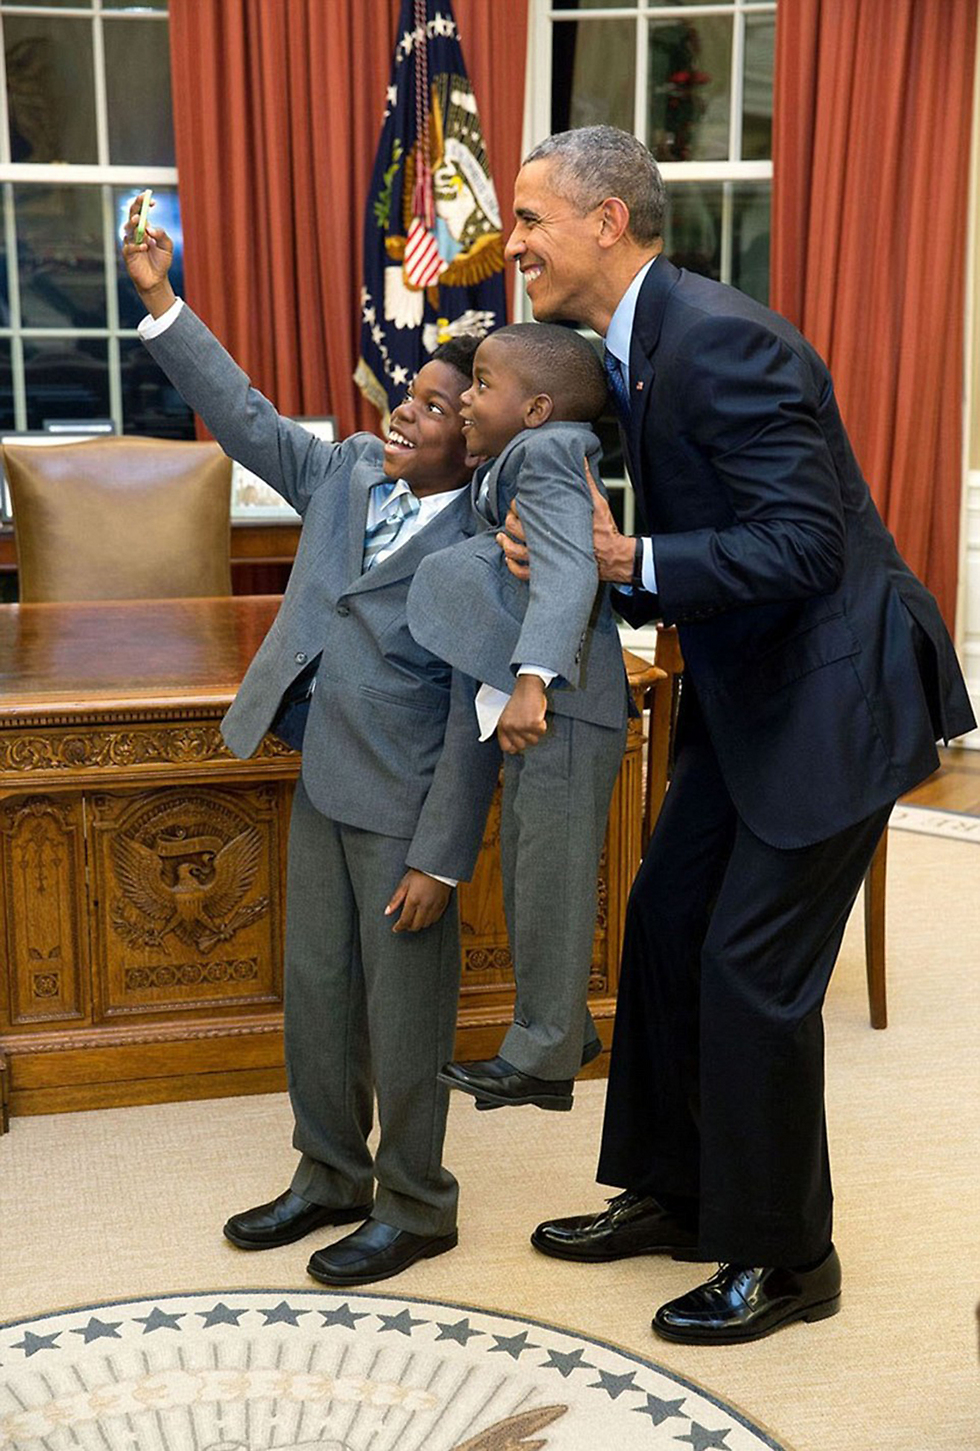 ילדיה של עובדת הבית הלבן שסיימה את תפקידה זוכים לסלפי (צילום: Offical White House Photo) (צילום: Offical White House Photo)